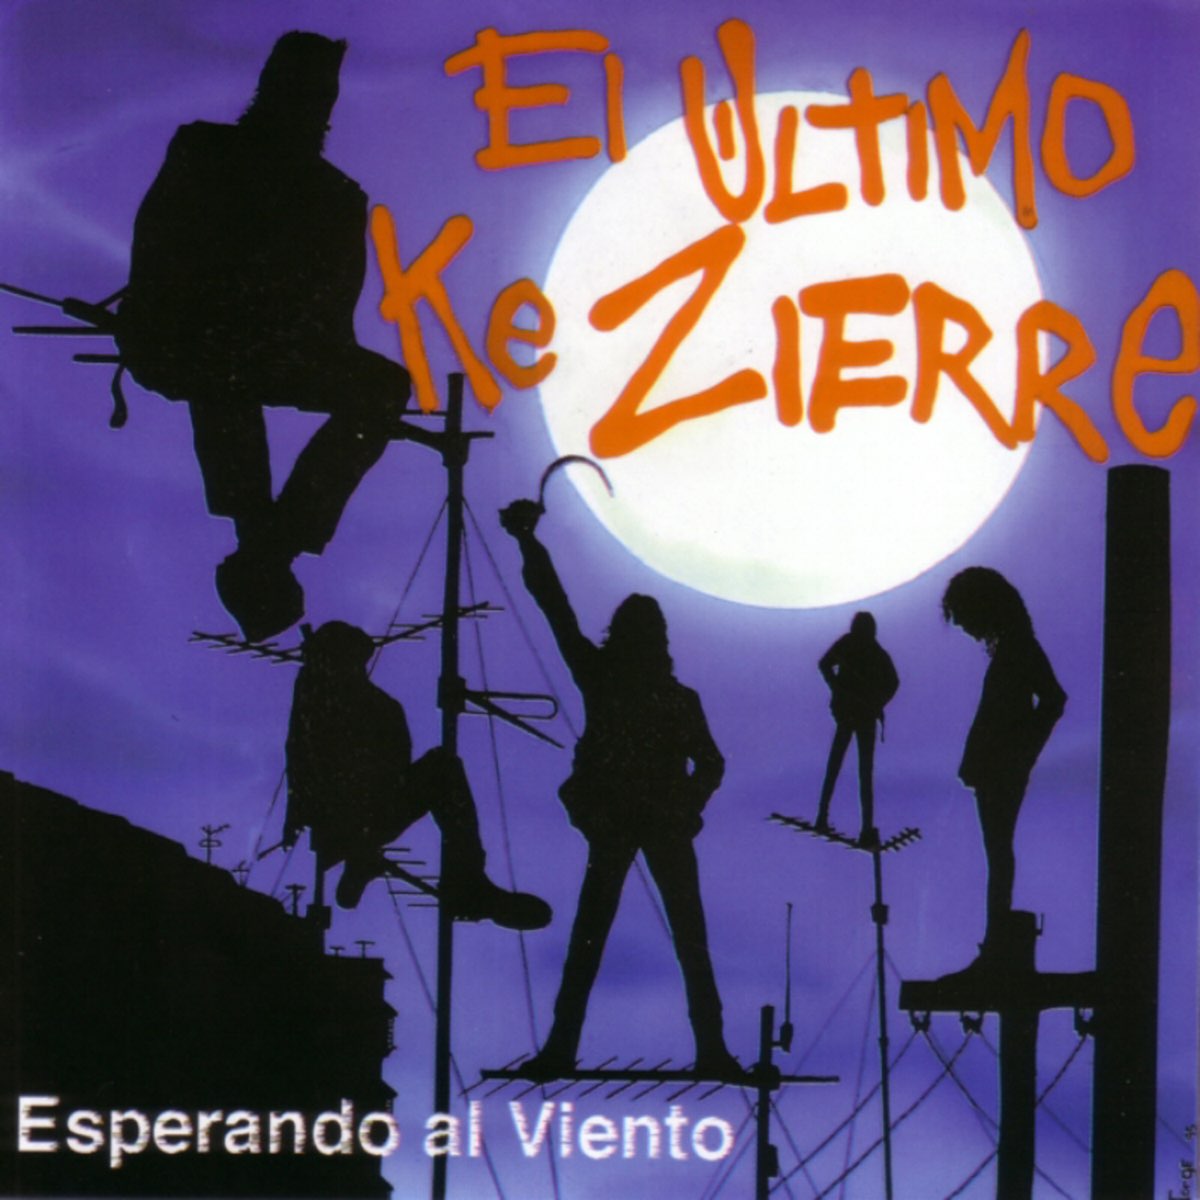 Esperando al Viento của El Último Ke Zierre trên Apple Music